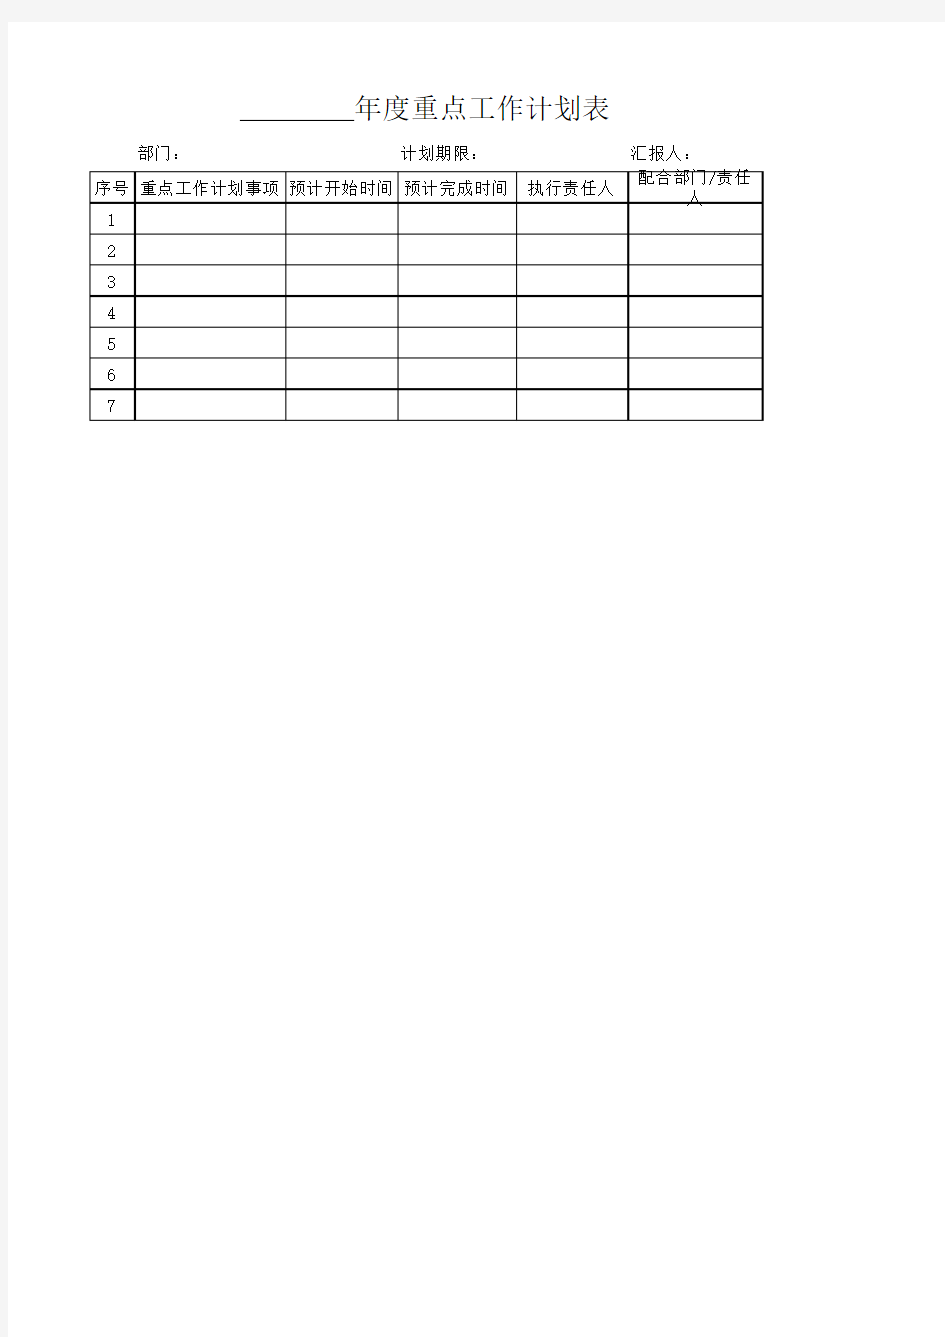 年度重点工作计划表(样表)